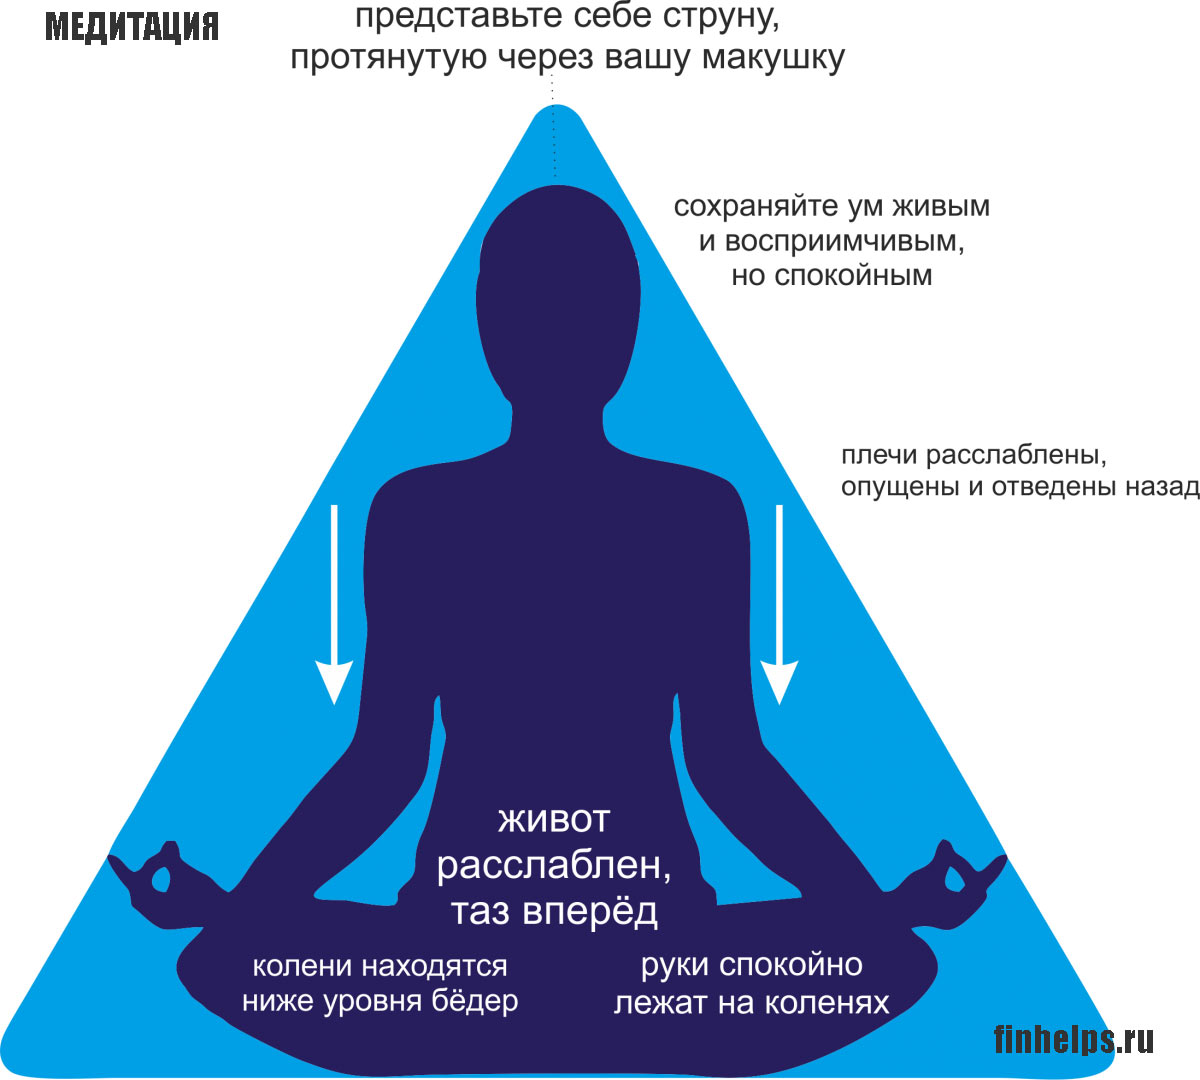 Создание медитаций. Правильная медитация. Как правильно медитировать. Формы и методы медитации. Медитация для начинающих.